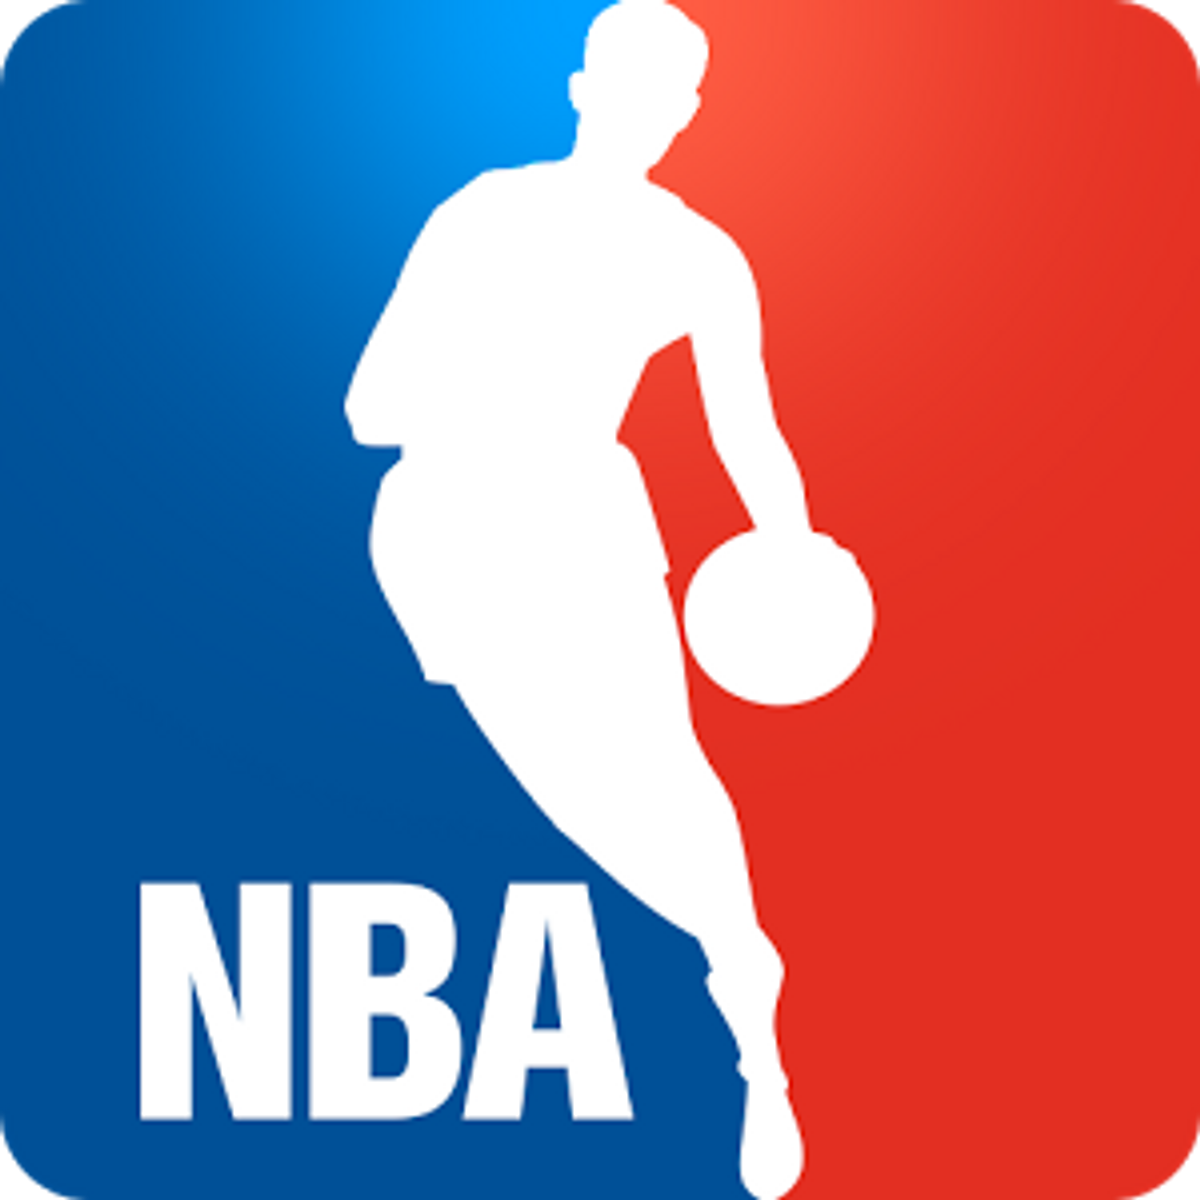 NBA Draft and Trades